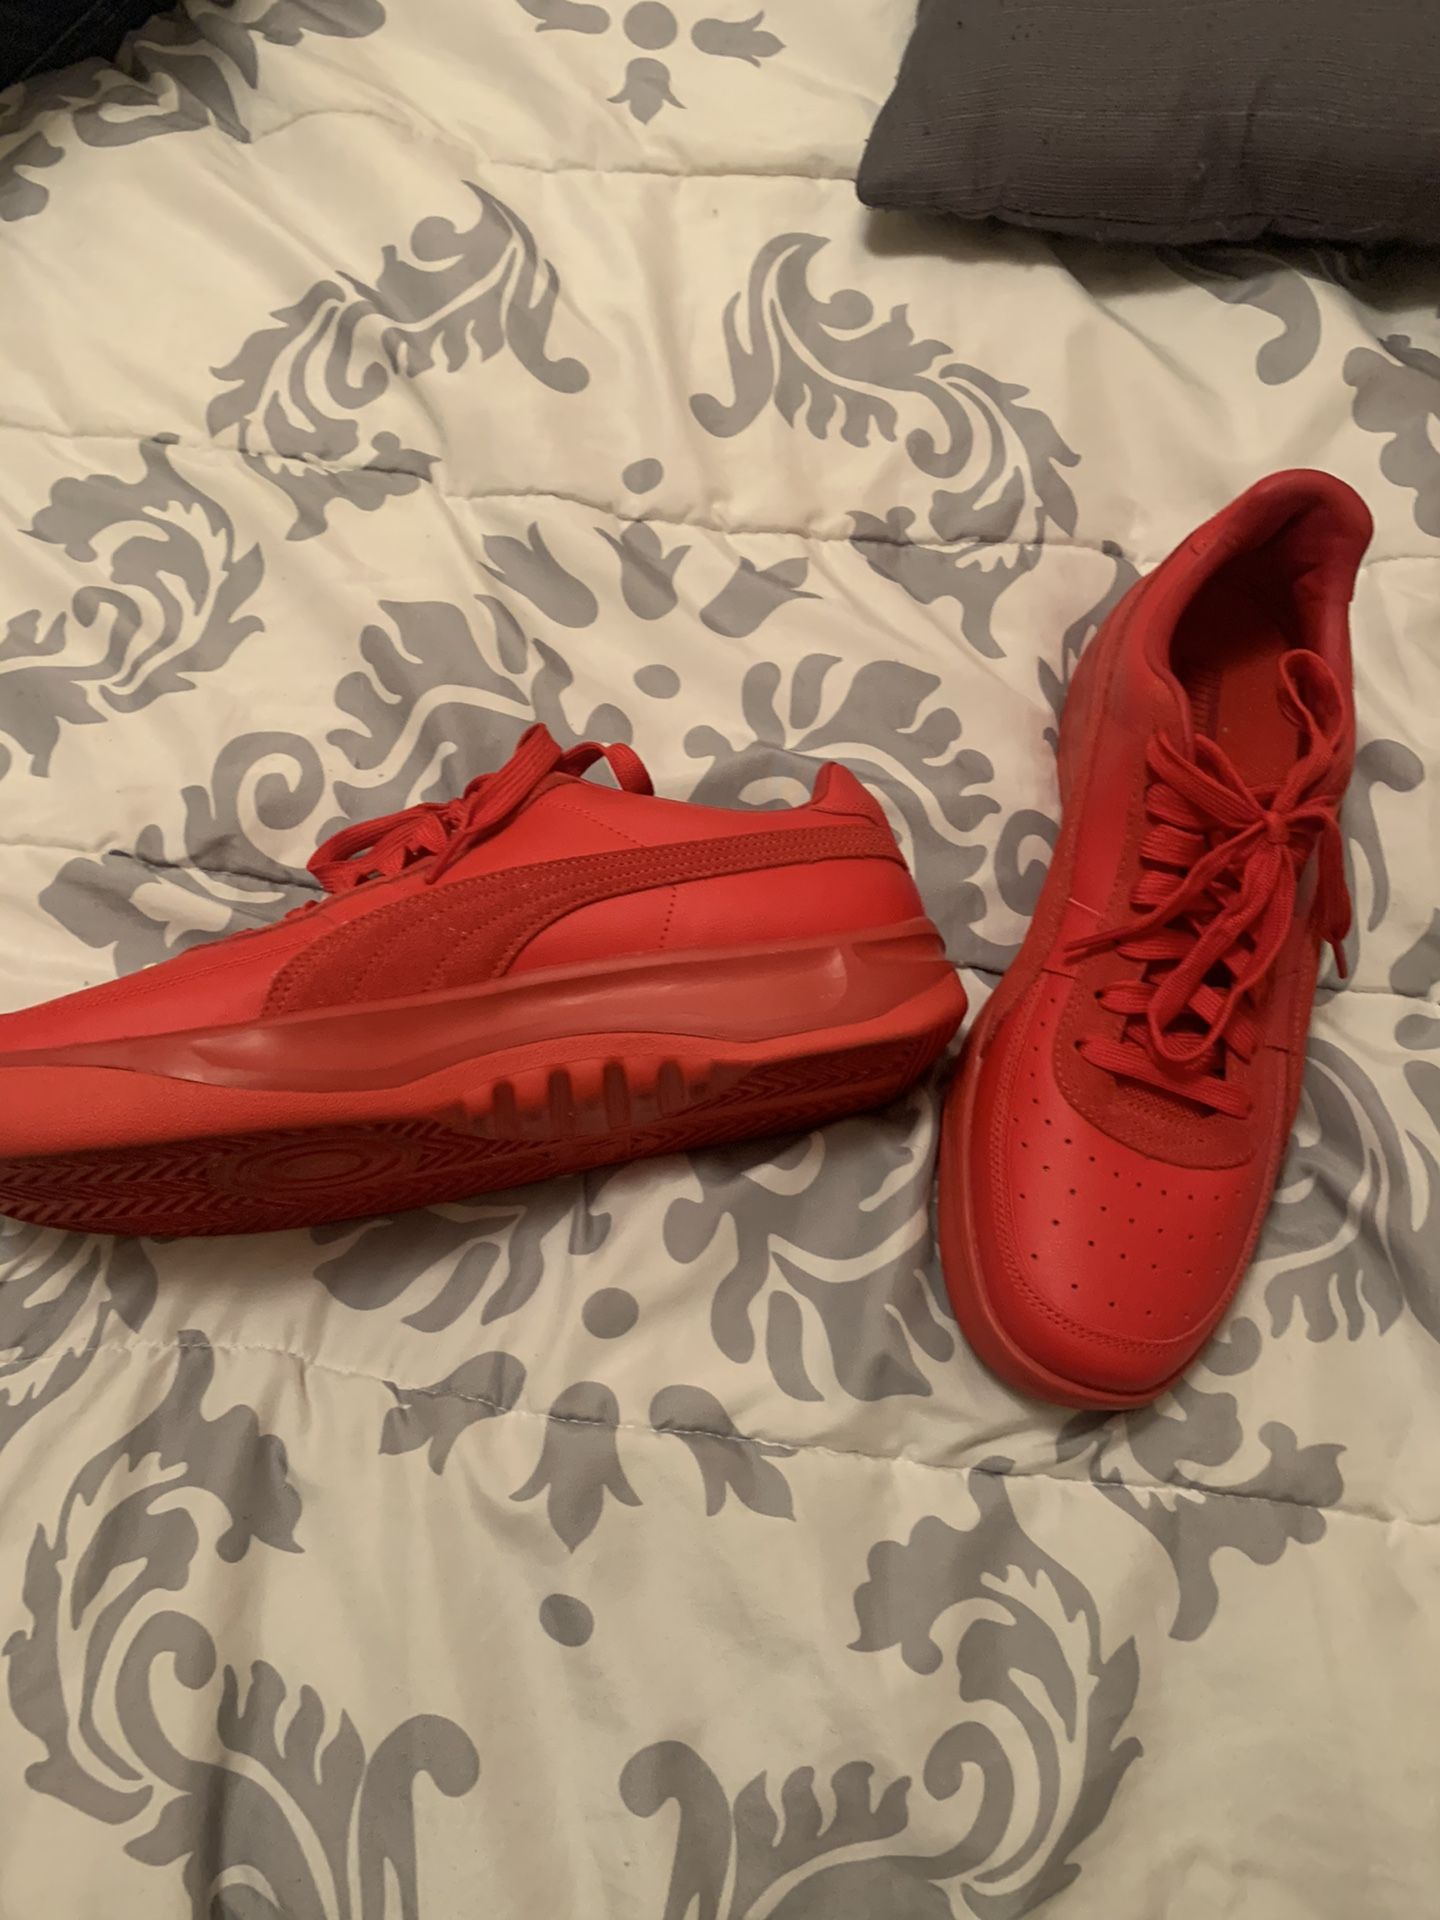 Puma GV Special Red Shoes